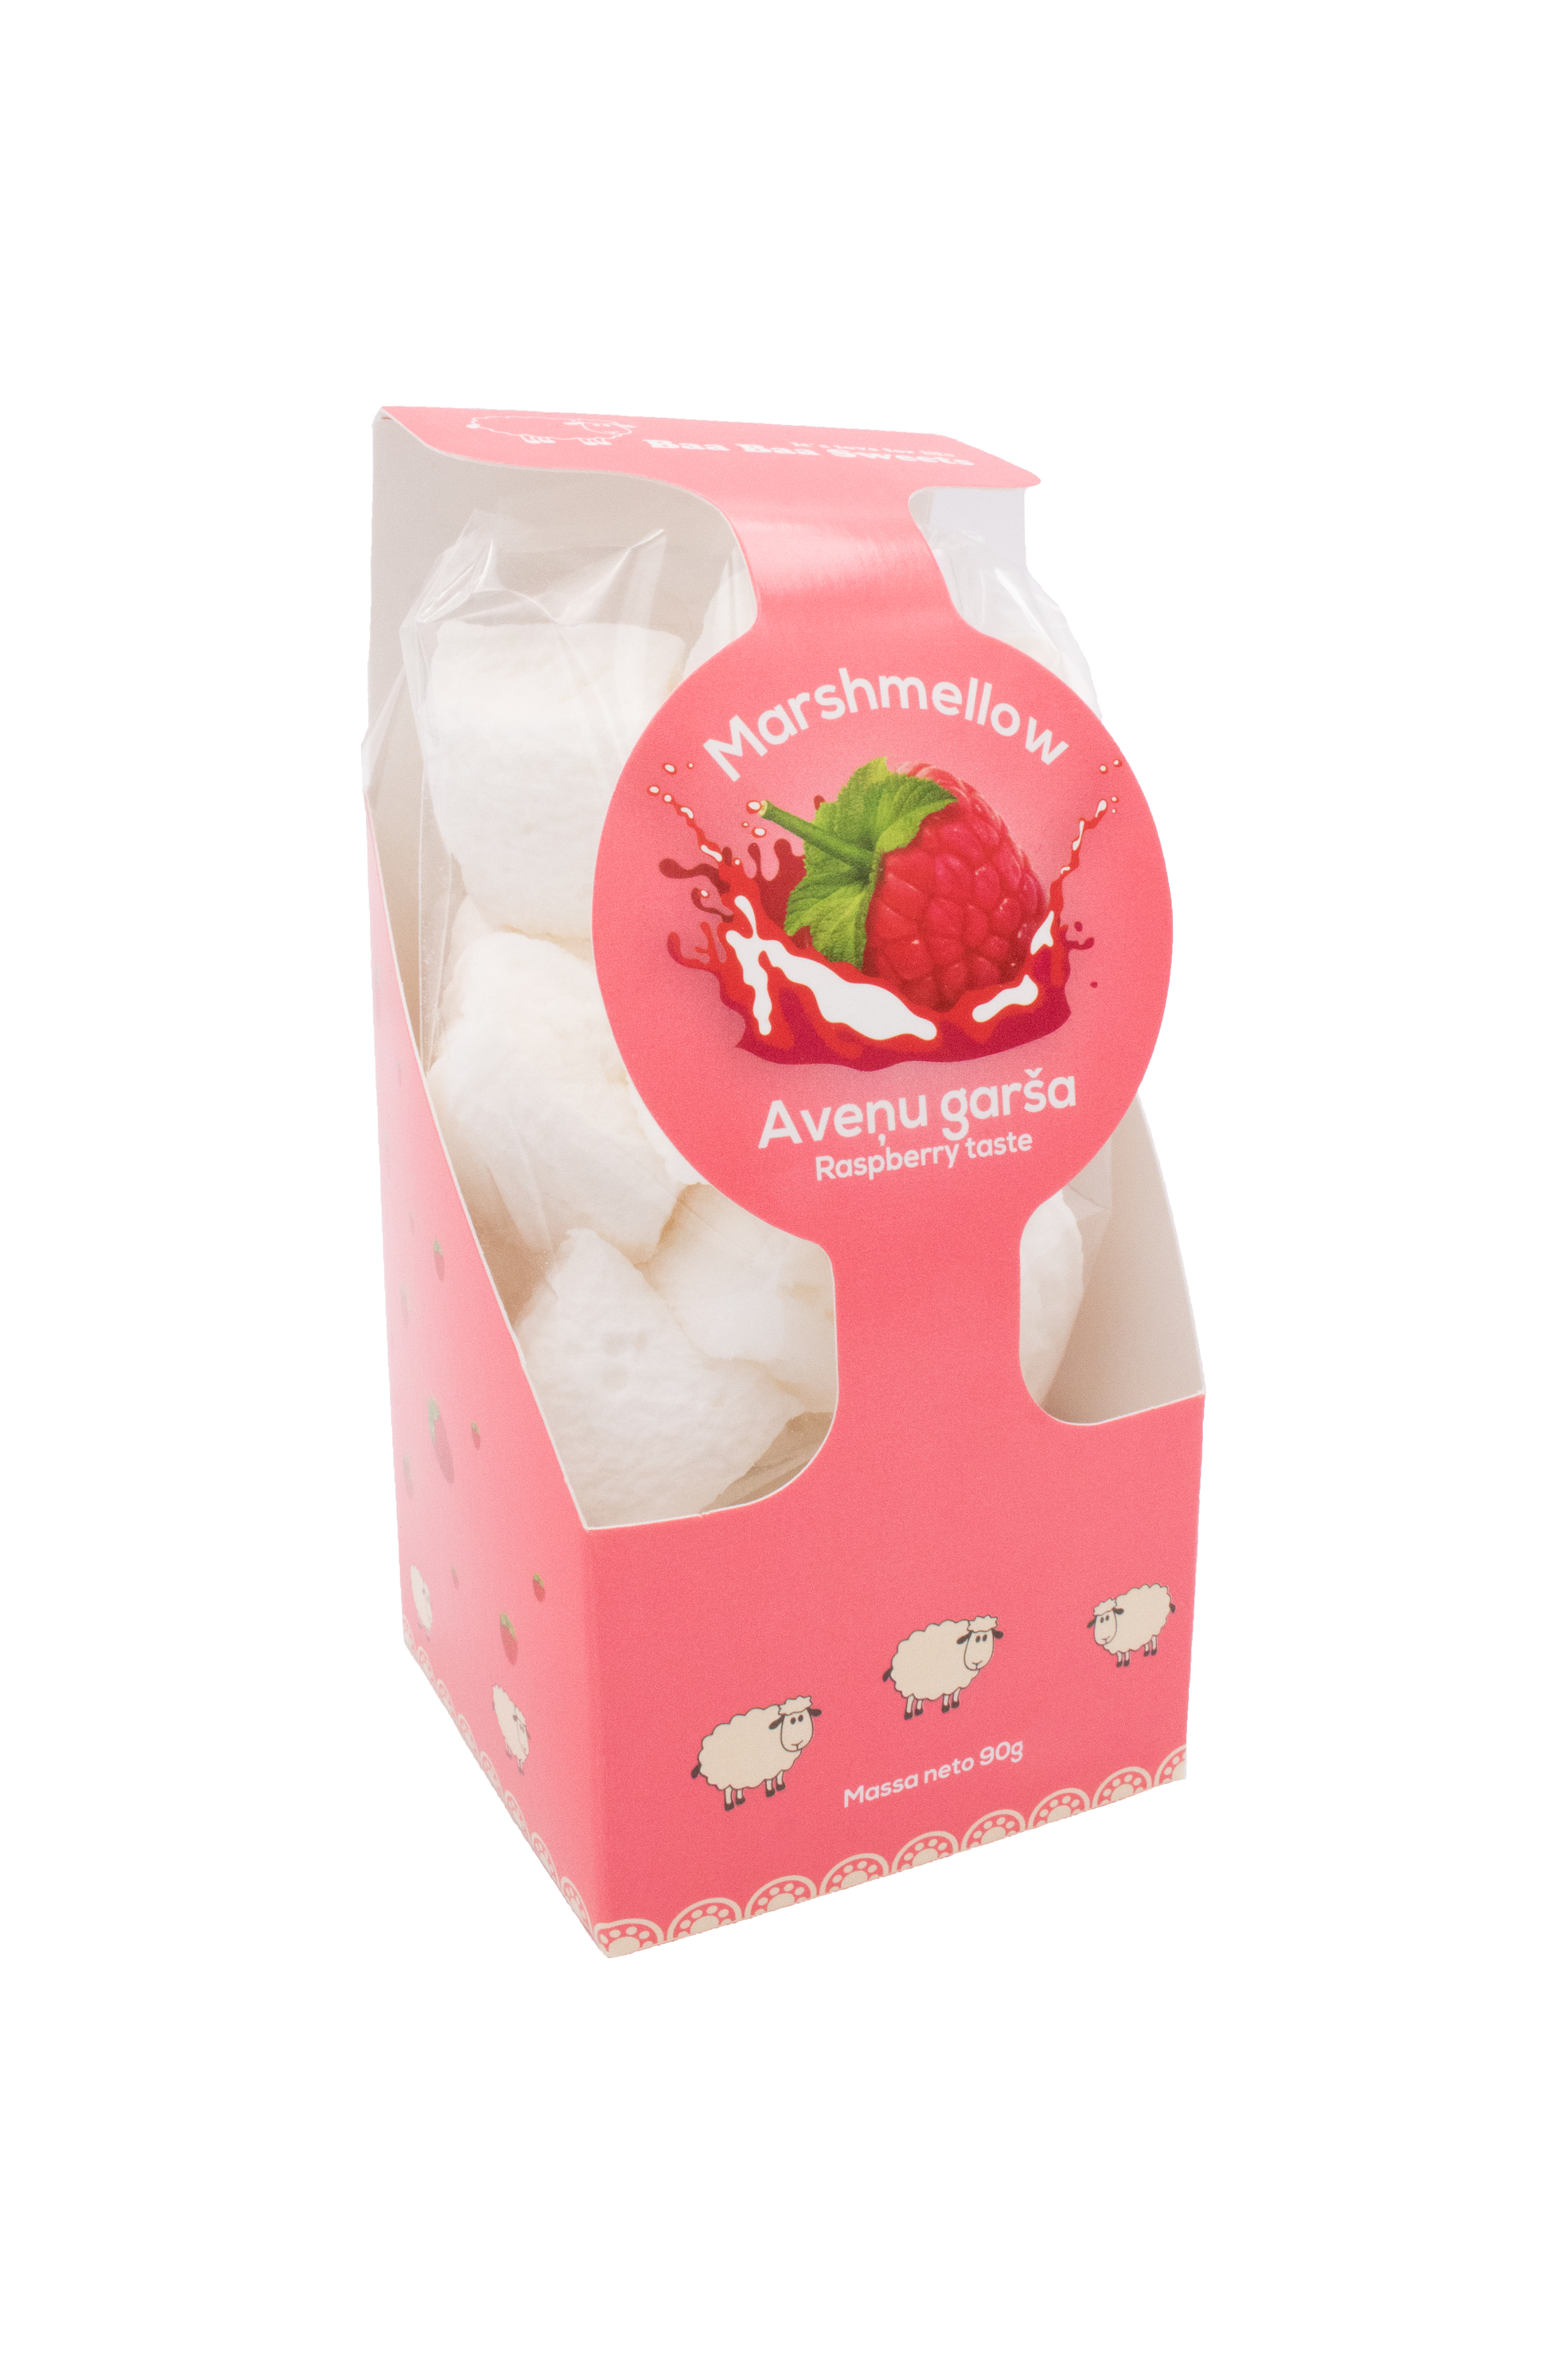 Putotā augļu-ogu konfekte Marshmallow - Karameļu darbnīca